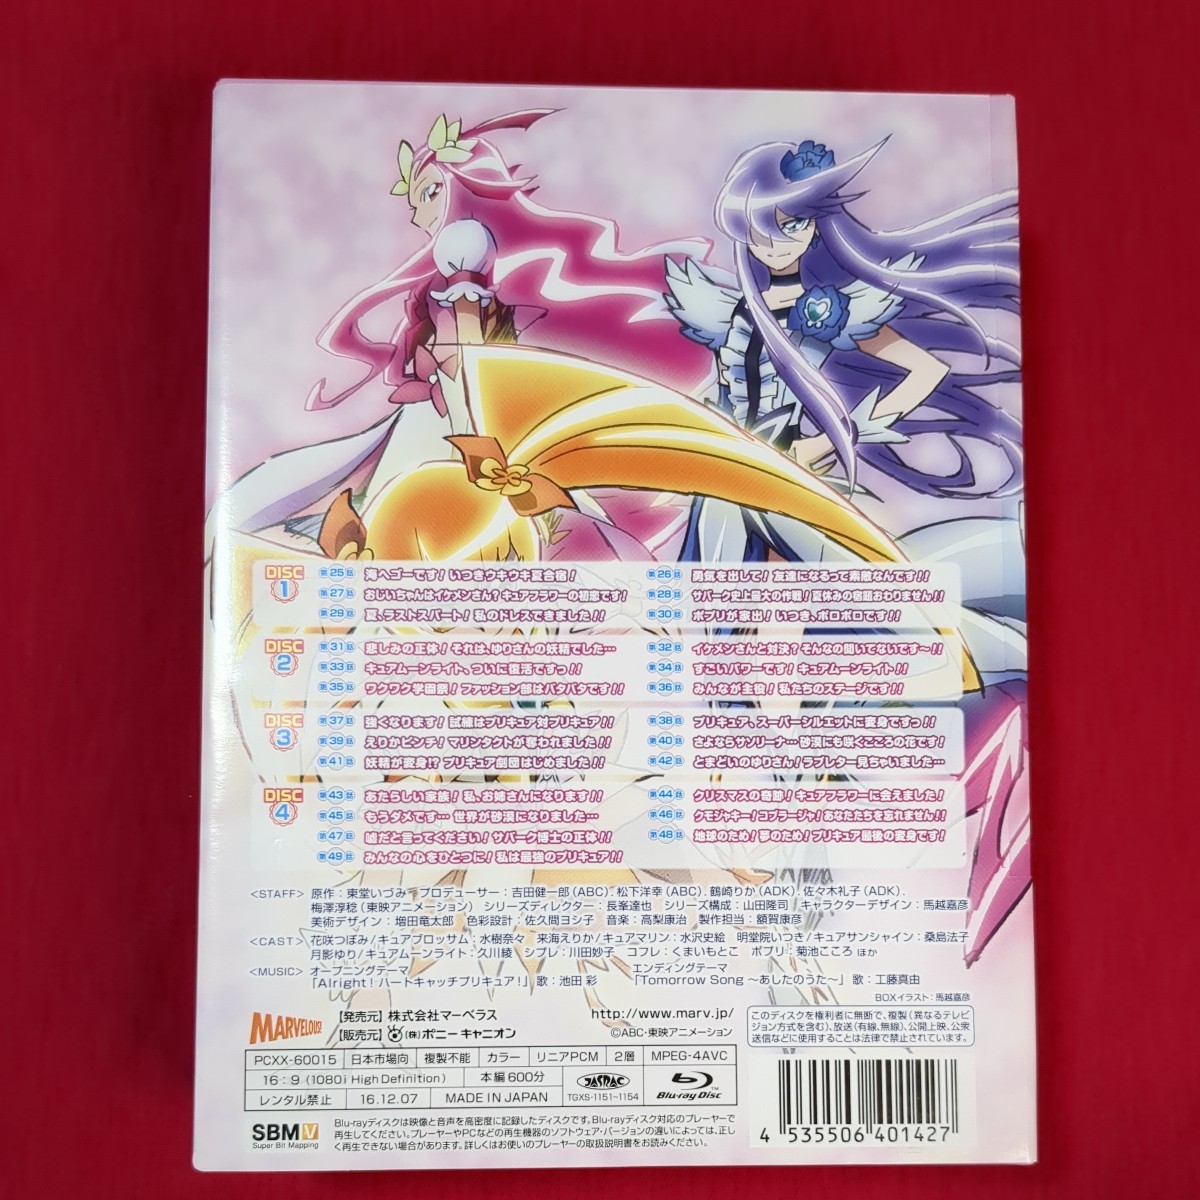 ハートキャッチプリキュア Blu-ray BOX vol.1 vol.2セット 完全初回